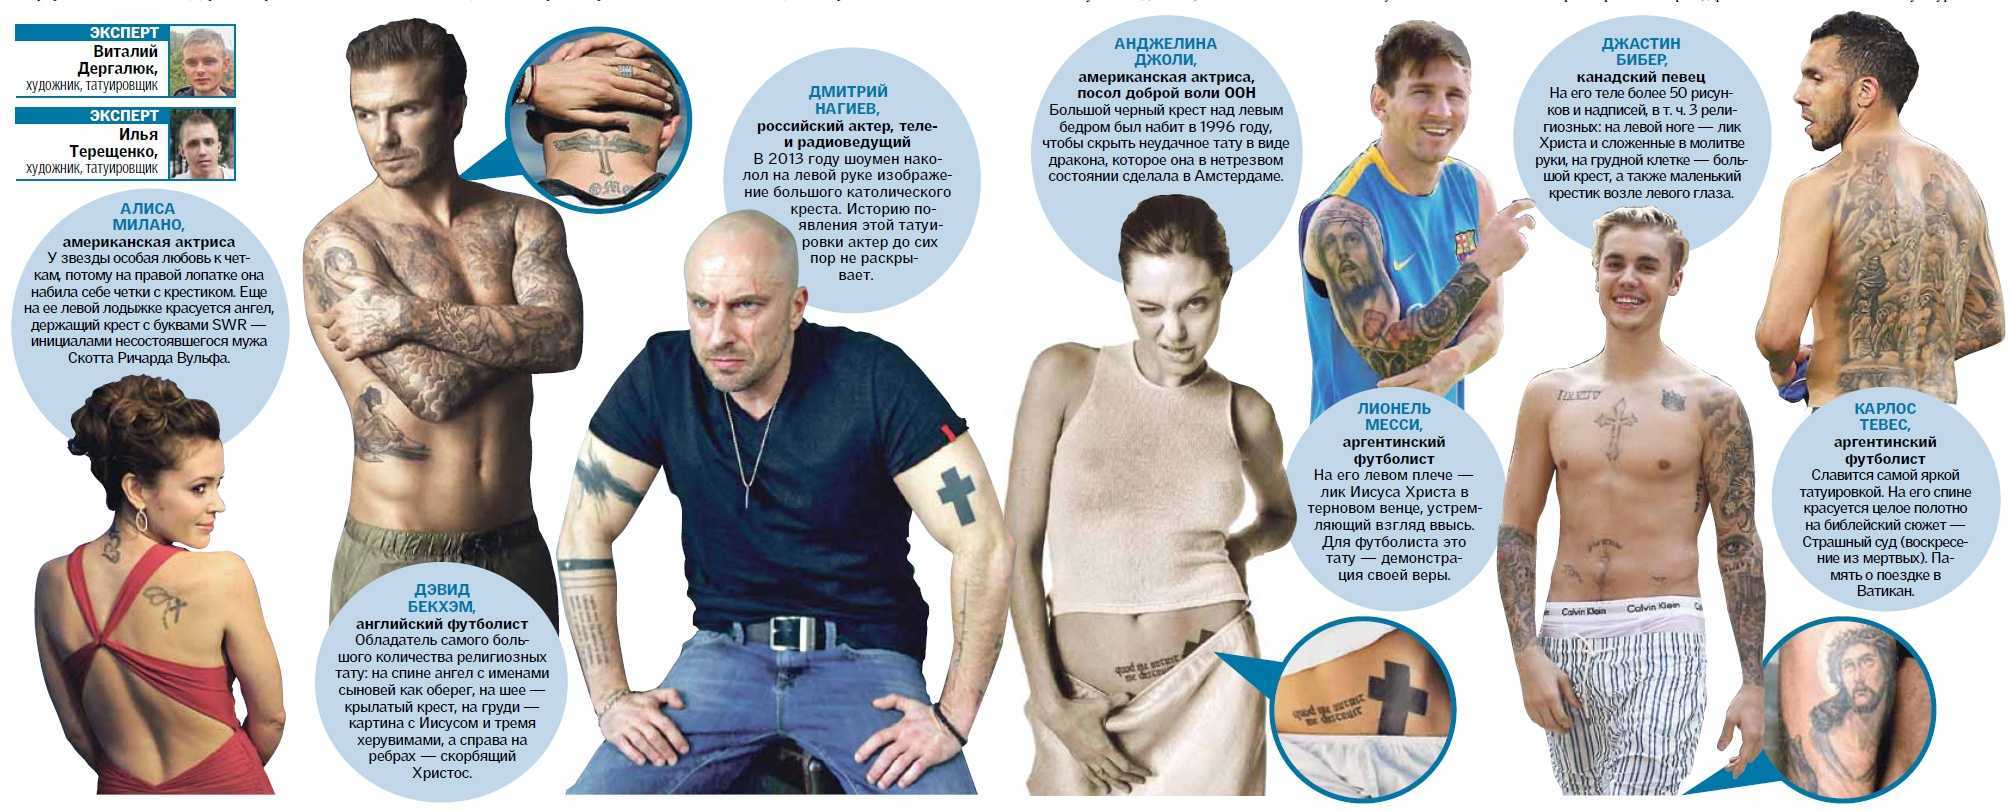 Тату что означает у мужчин. Интересные факты о татуировках. Отношение людей к татуировкам. Какие Татуировки нельзя набивать. Тату означающие несколько личностей.